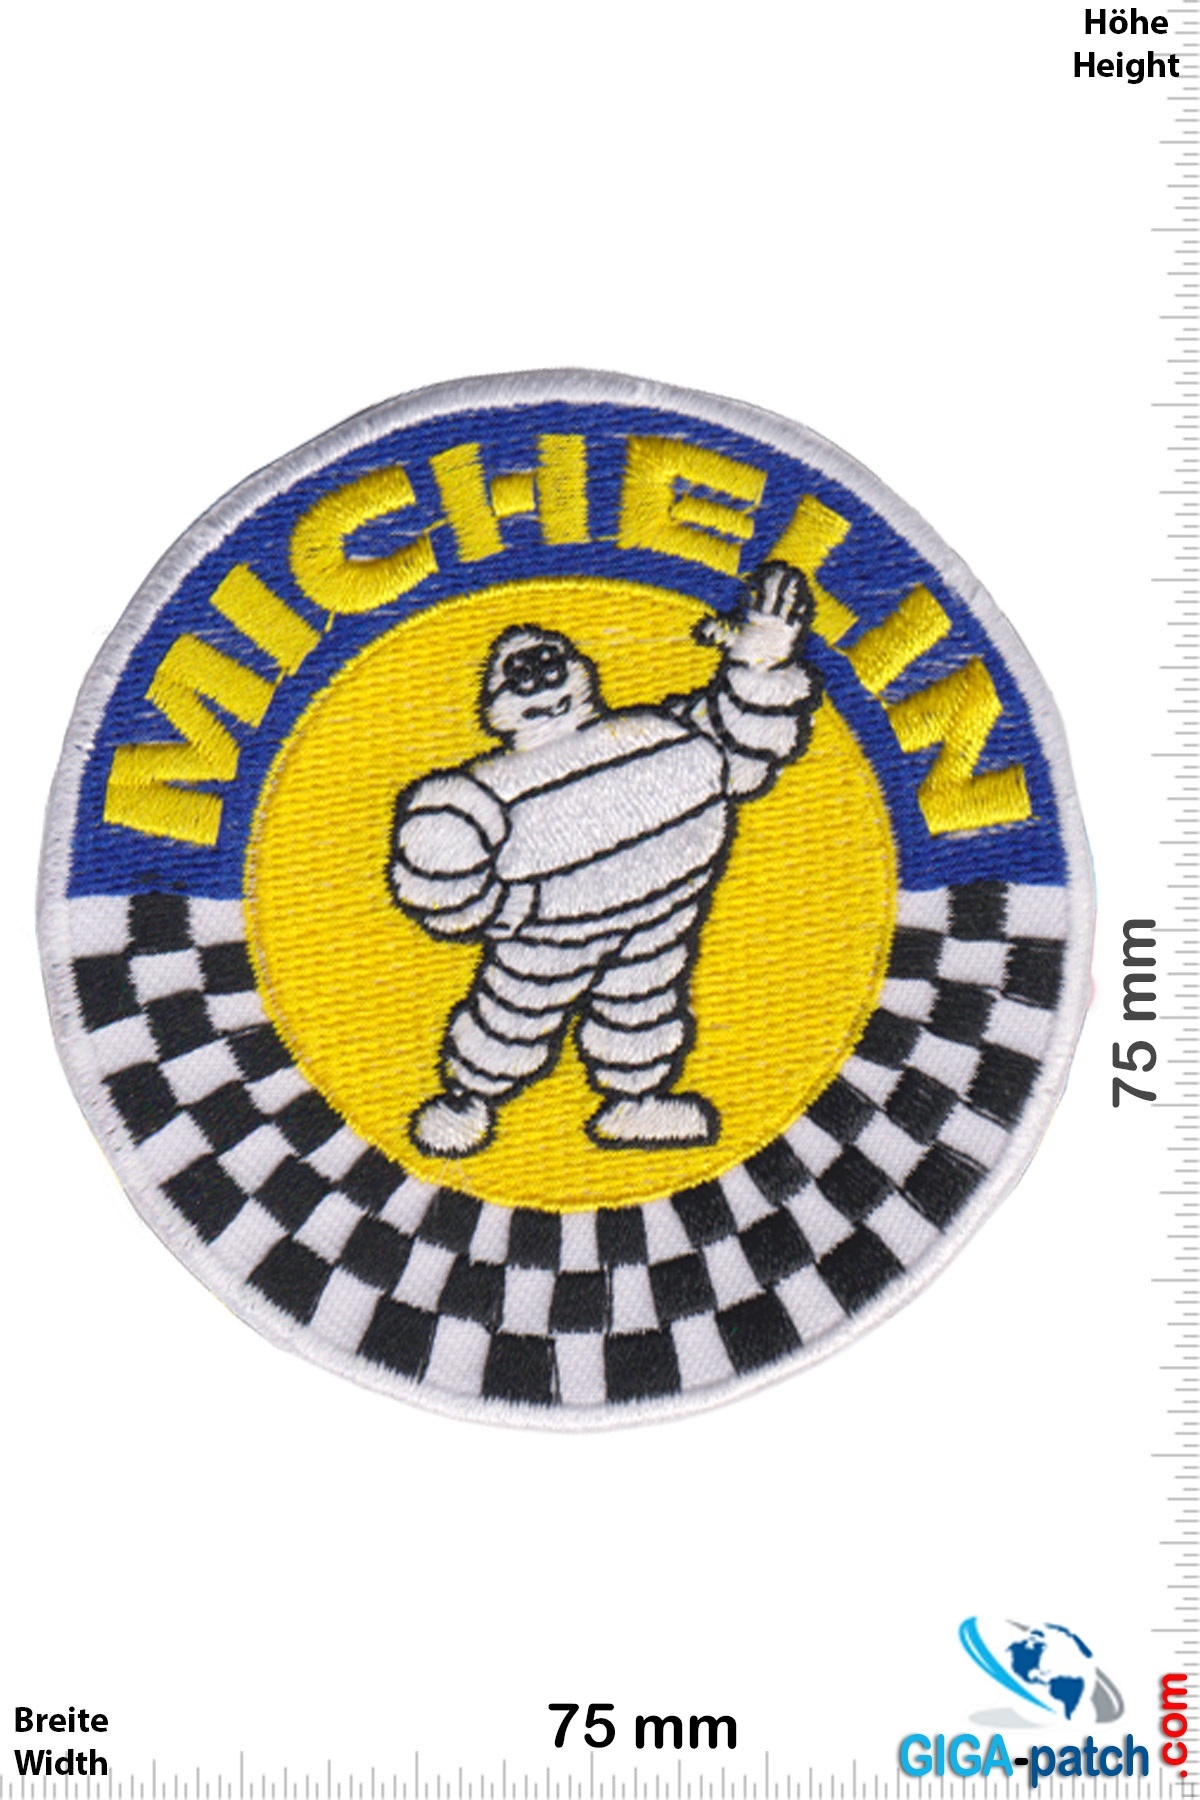 Michelin - Michelin Mann - Race- Patch- Aufnäher - Aufnäher Shop / Patch -  Shop - größter weltweit - Patch Aufnäher Schlüsselanhänger Aufkleber